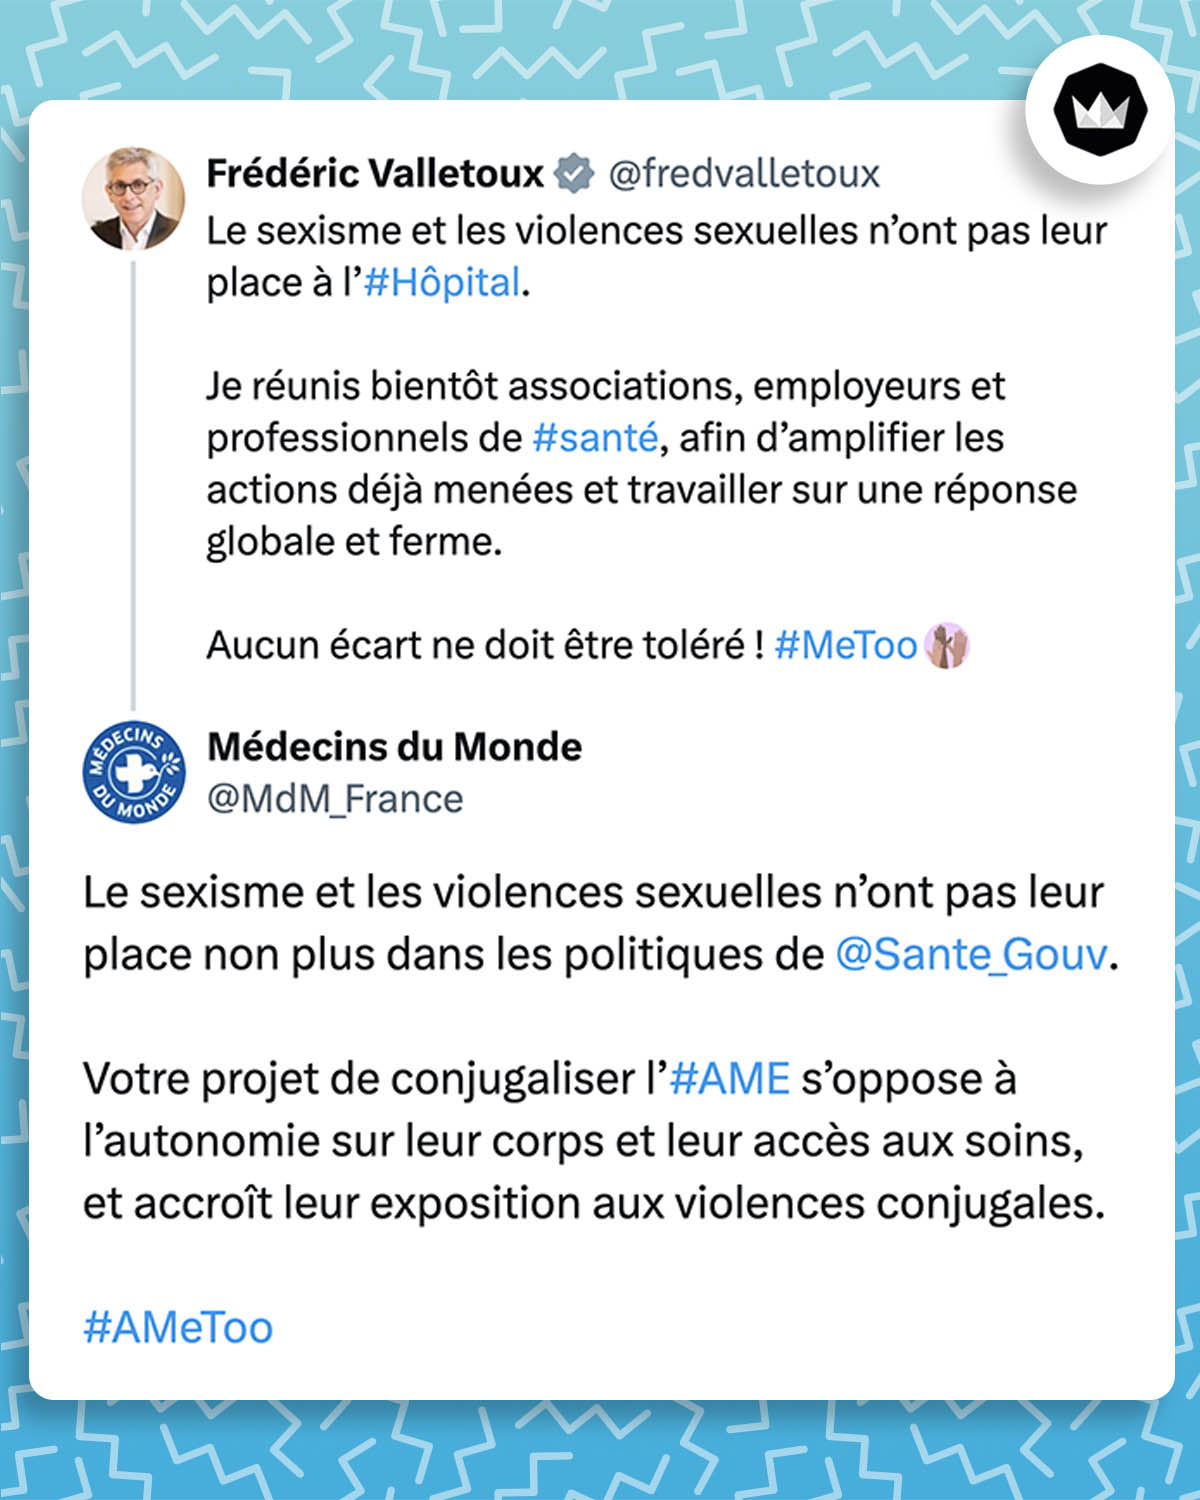 @fredvalletoux :
Le sexisme et les violences sexuelles n’ont pas leur place à l’#Hôpital.
Je réunis bientôt associations, employeurs et professionnels de #santé, afin d’amplifier les actions déjà menées et travailler sur une réponse globale et ferme.
Aucun écart ne doit être toléré ! #MeToo

Médecins du Monde
(@MdM_France) : Le sexisme et les violences sexuelles n’ont pas leur place non plus dans les politiques de @Sante_Gouv.
Votre projet de conjugaliser l’#AME s’oppose à l’autonomie sur leur corps et leur accès aux soins, et accroît leur exposition aux violences conjugales.   
#AMeToo